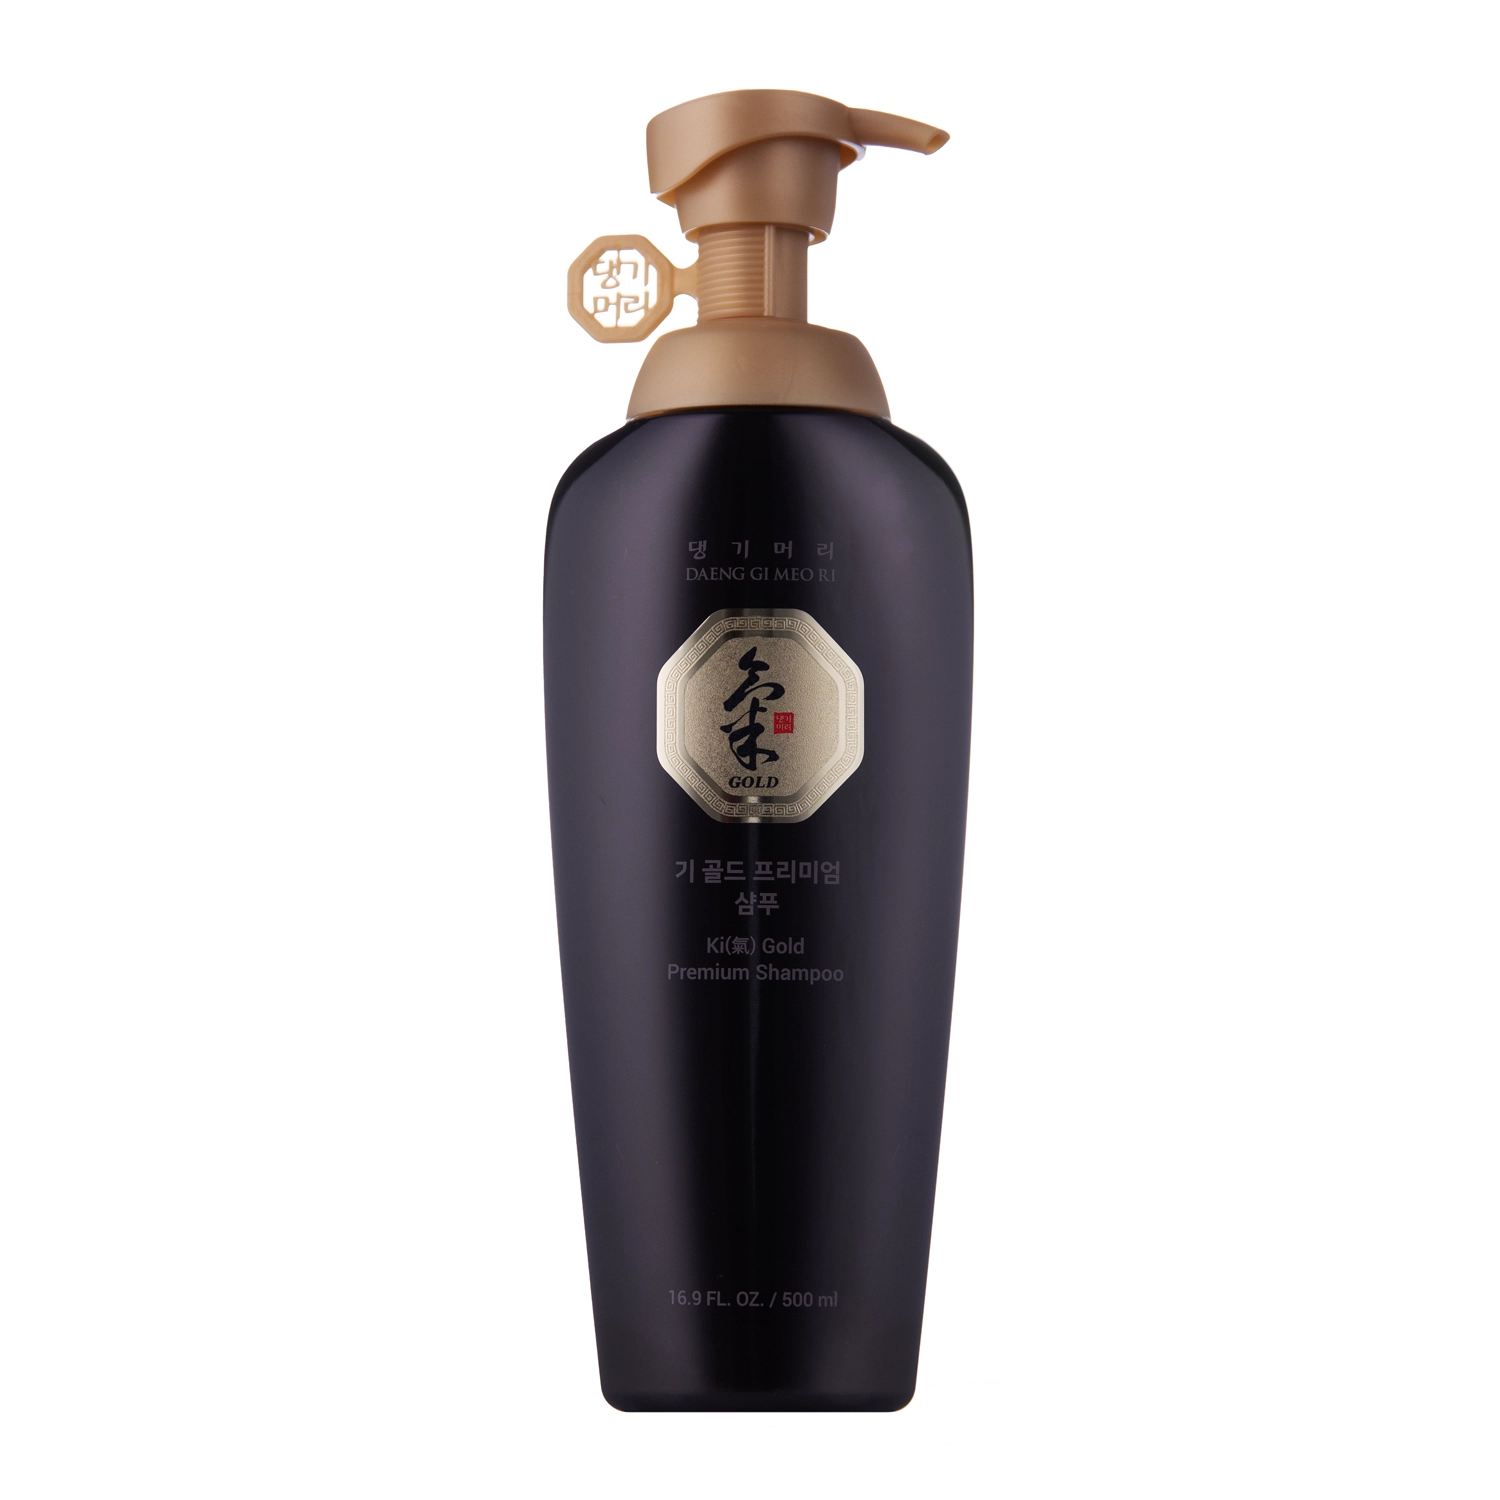 Daeng Gi Meo Ri - Ki Gold Premium Shampoo - Șampon de întărire pentru părul uscat și fragil - 500ml